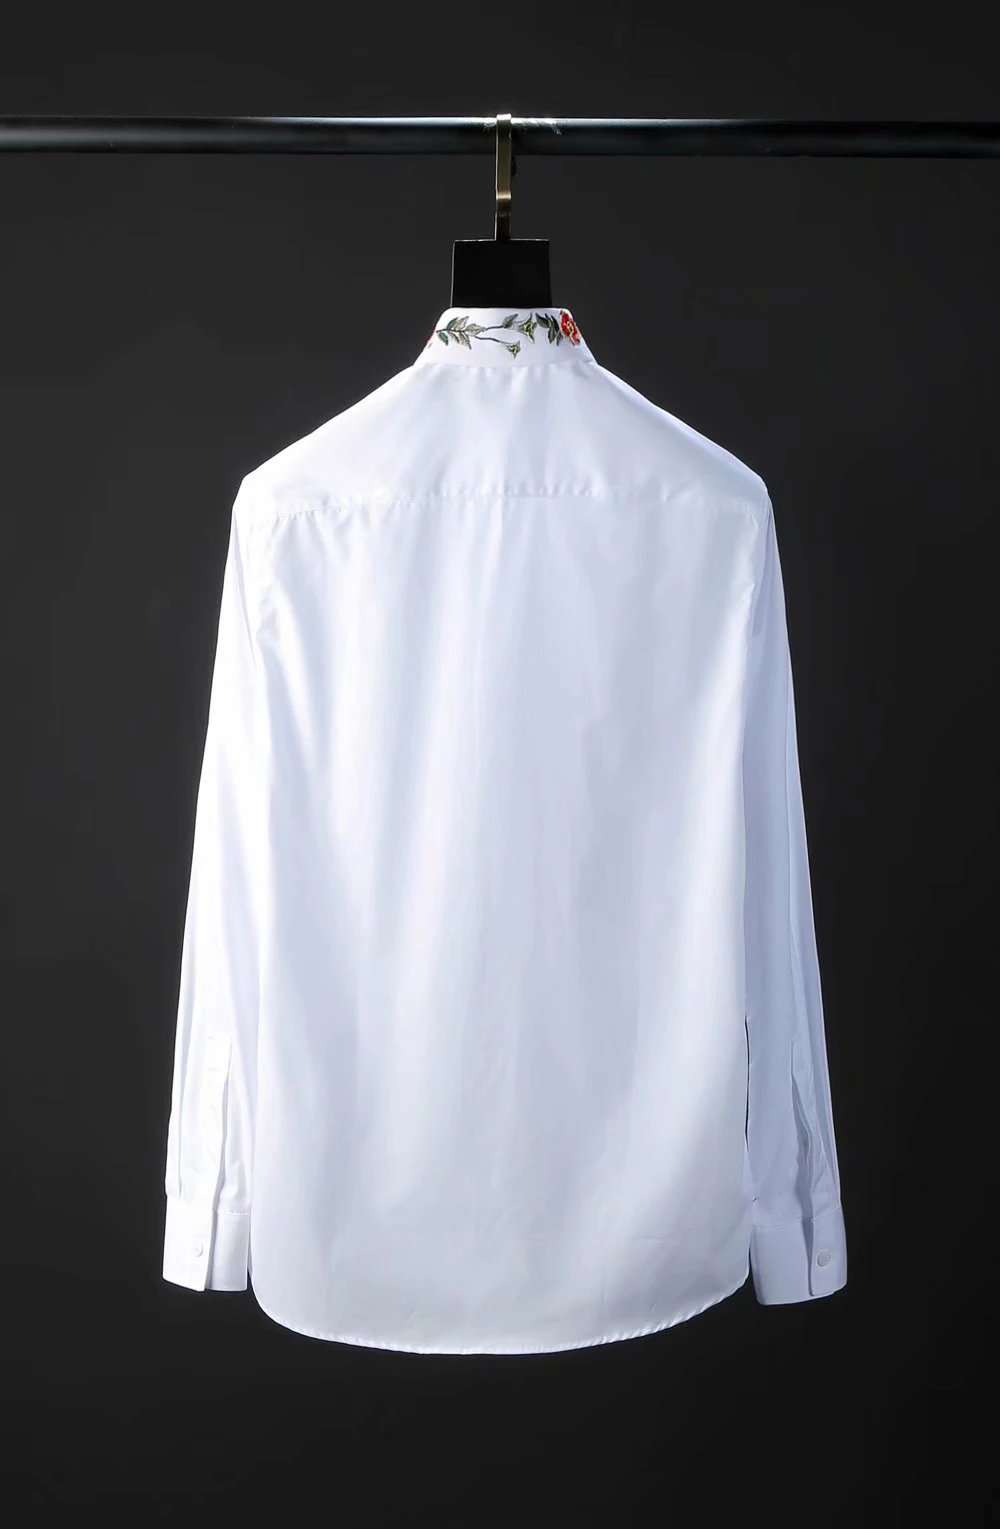 DUYOU/брендовая мужская рубашка из хлопка, мужская рубашка с длинными рукавами, мужская приталенная рубашка, мужская рубашка с воротником и вышивкой, повседневные рубашки с цветочным принтом